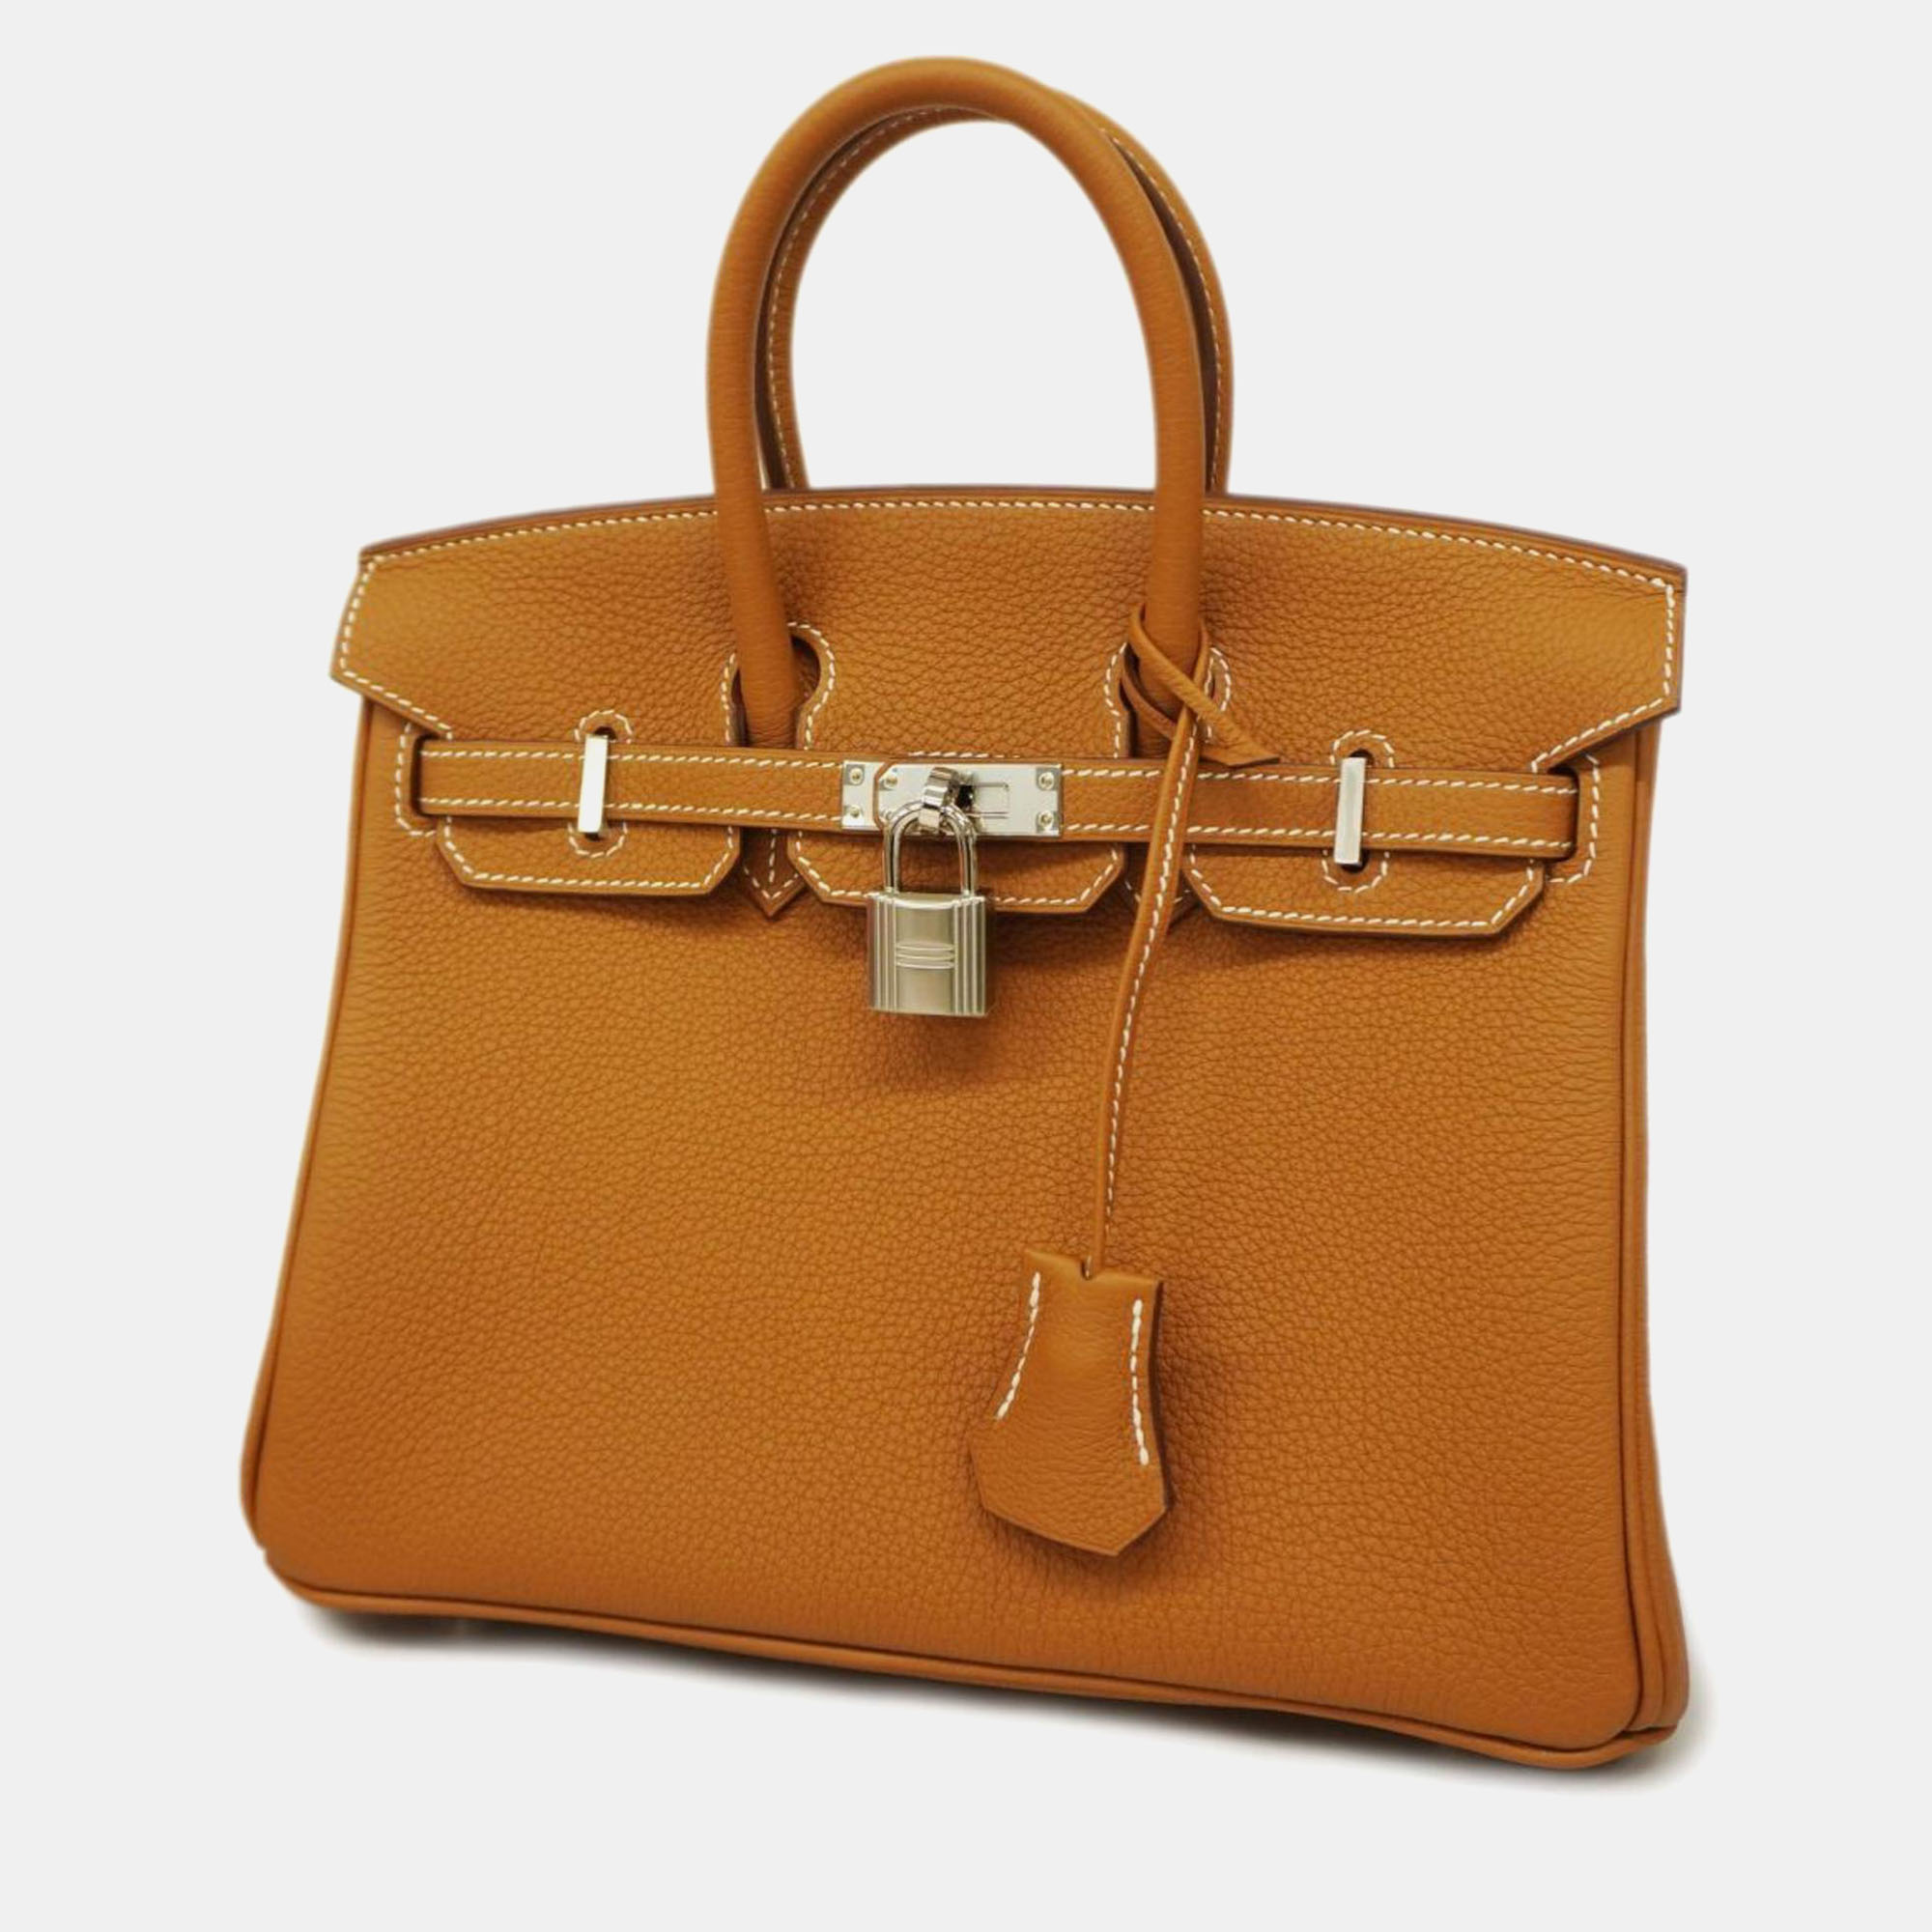 Hermes gold togo leather birkin 25 tote bag